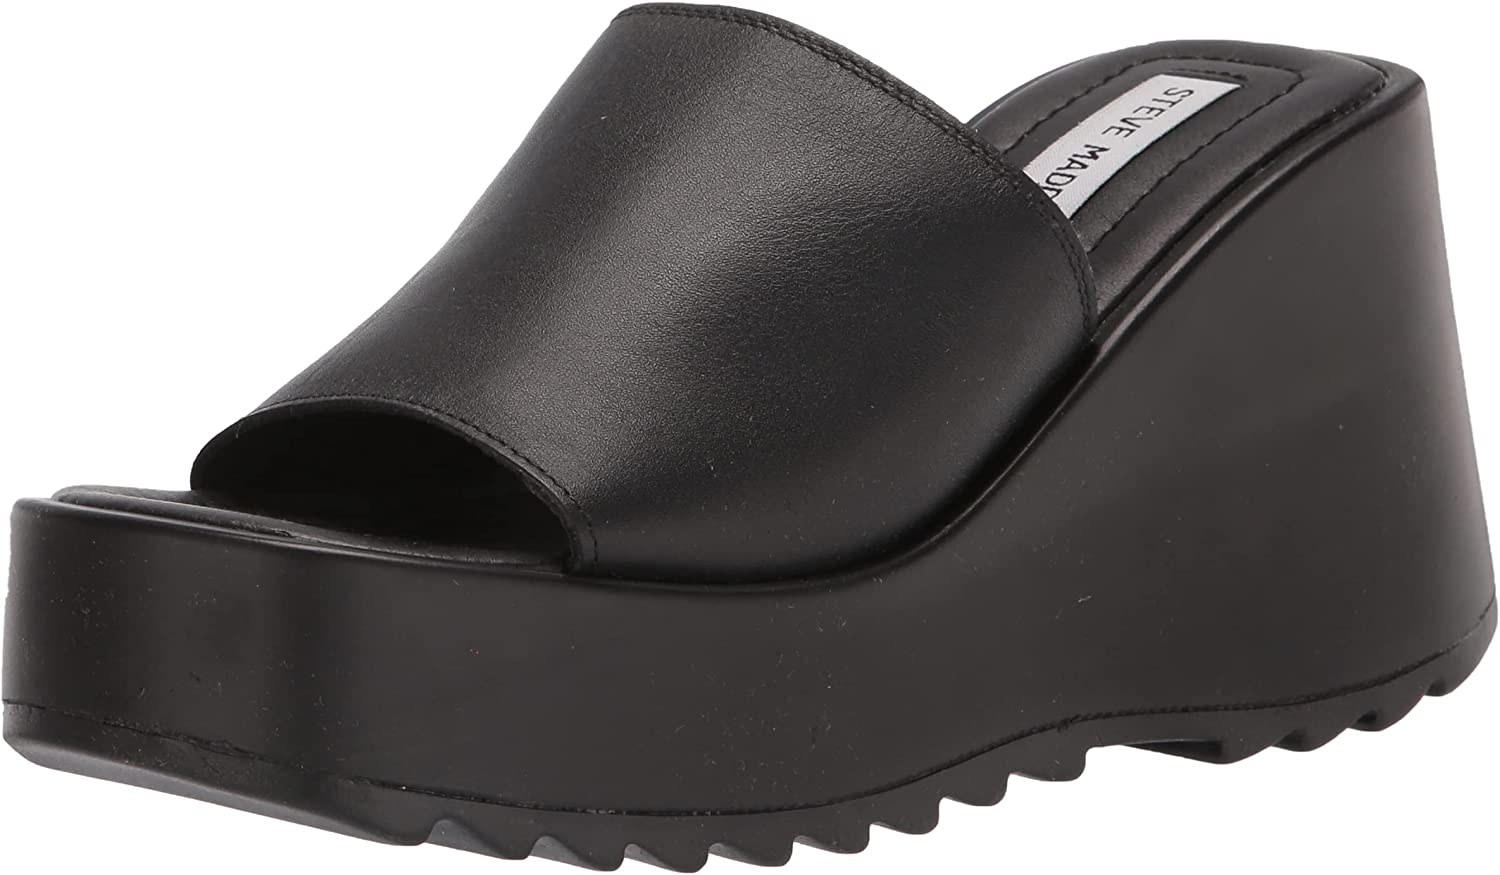 Slide sandals in black